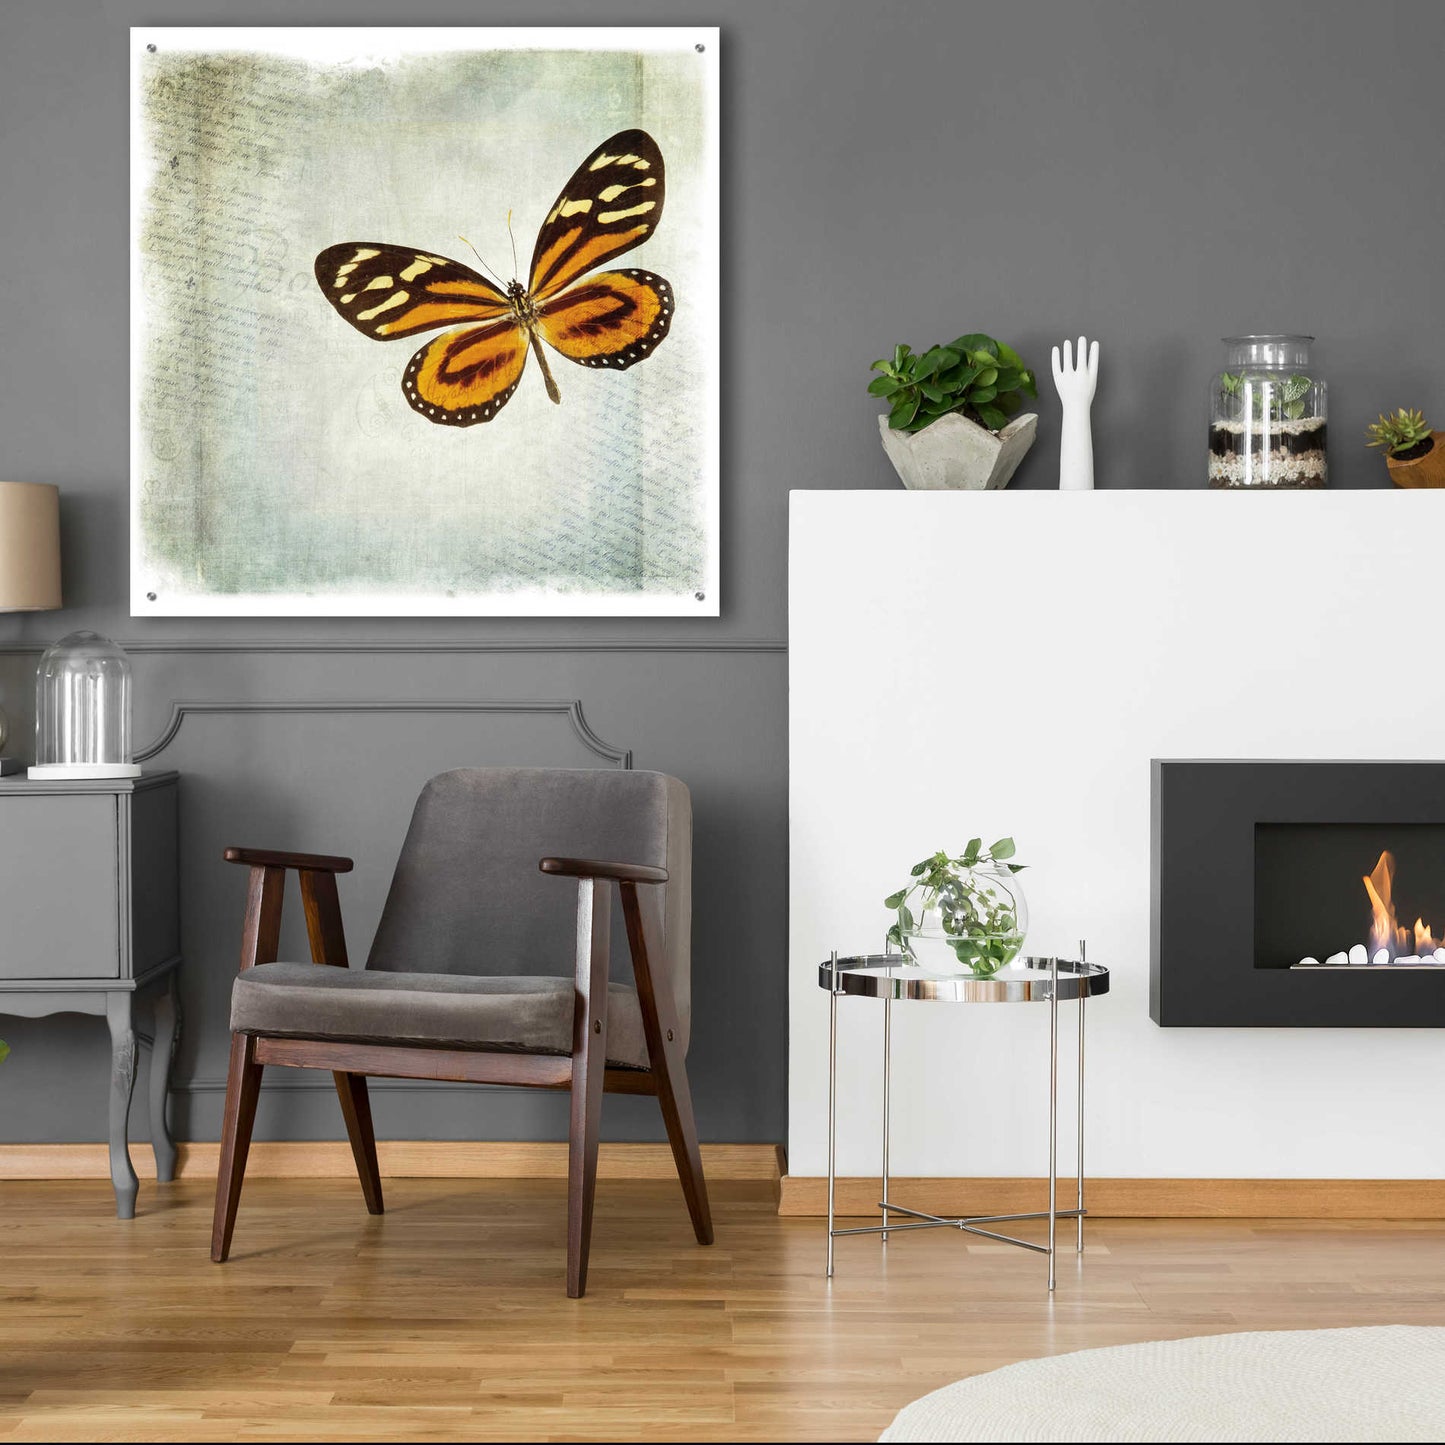 Epic Art 'Floating Butterfly VI' by Debra Van Swearingen, Acrylic Glass Wall Art,36x36